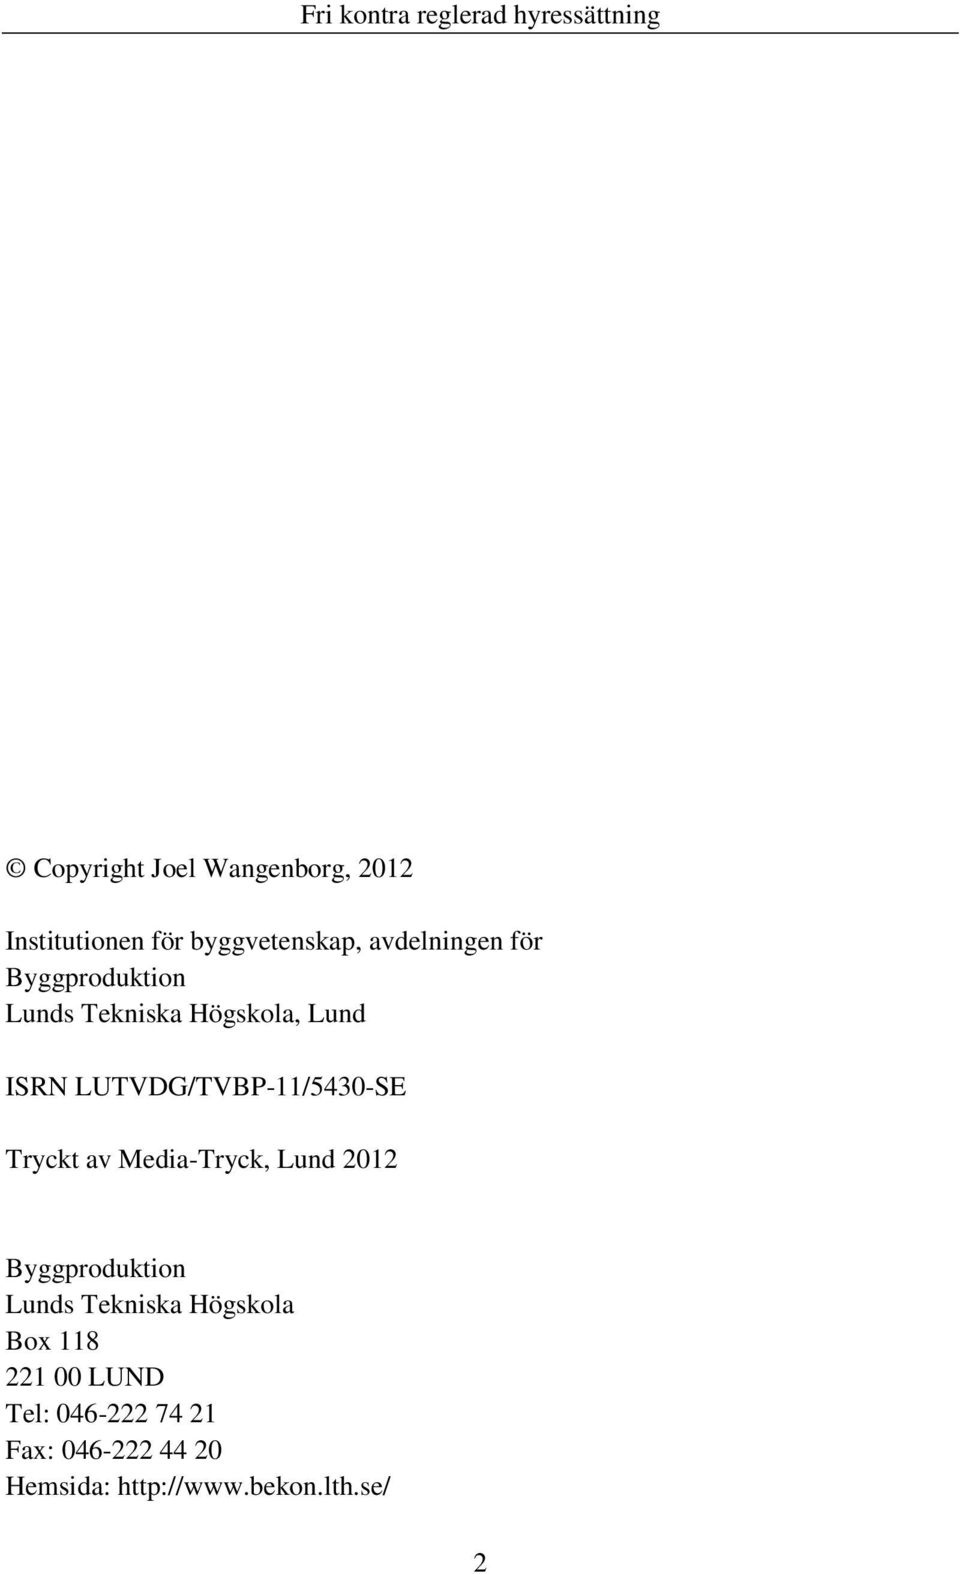 Tryckt av Media-Tryck, Lund 2012 Byggproduktion Lunds Tekniska Högskola Box 118